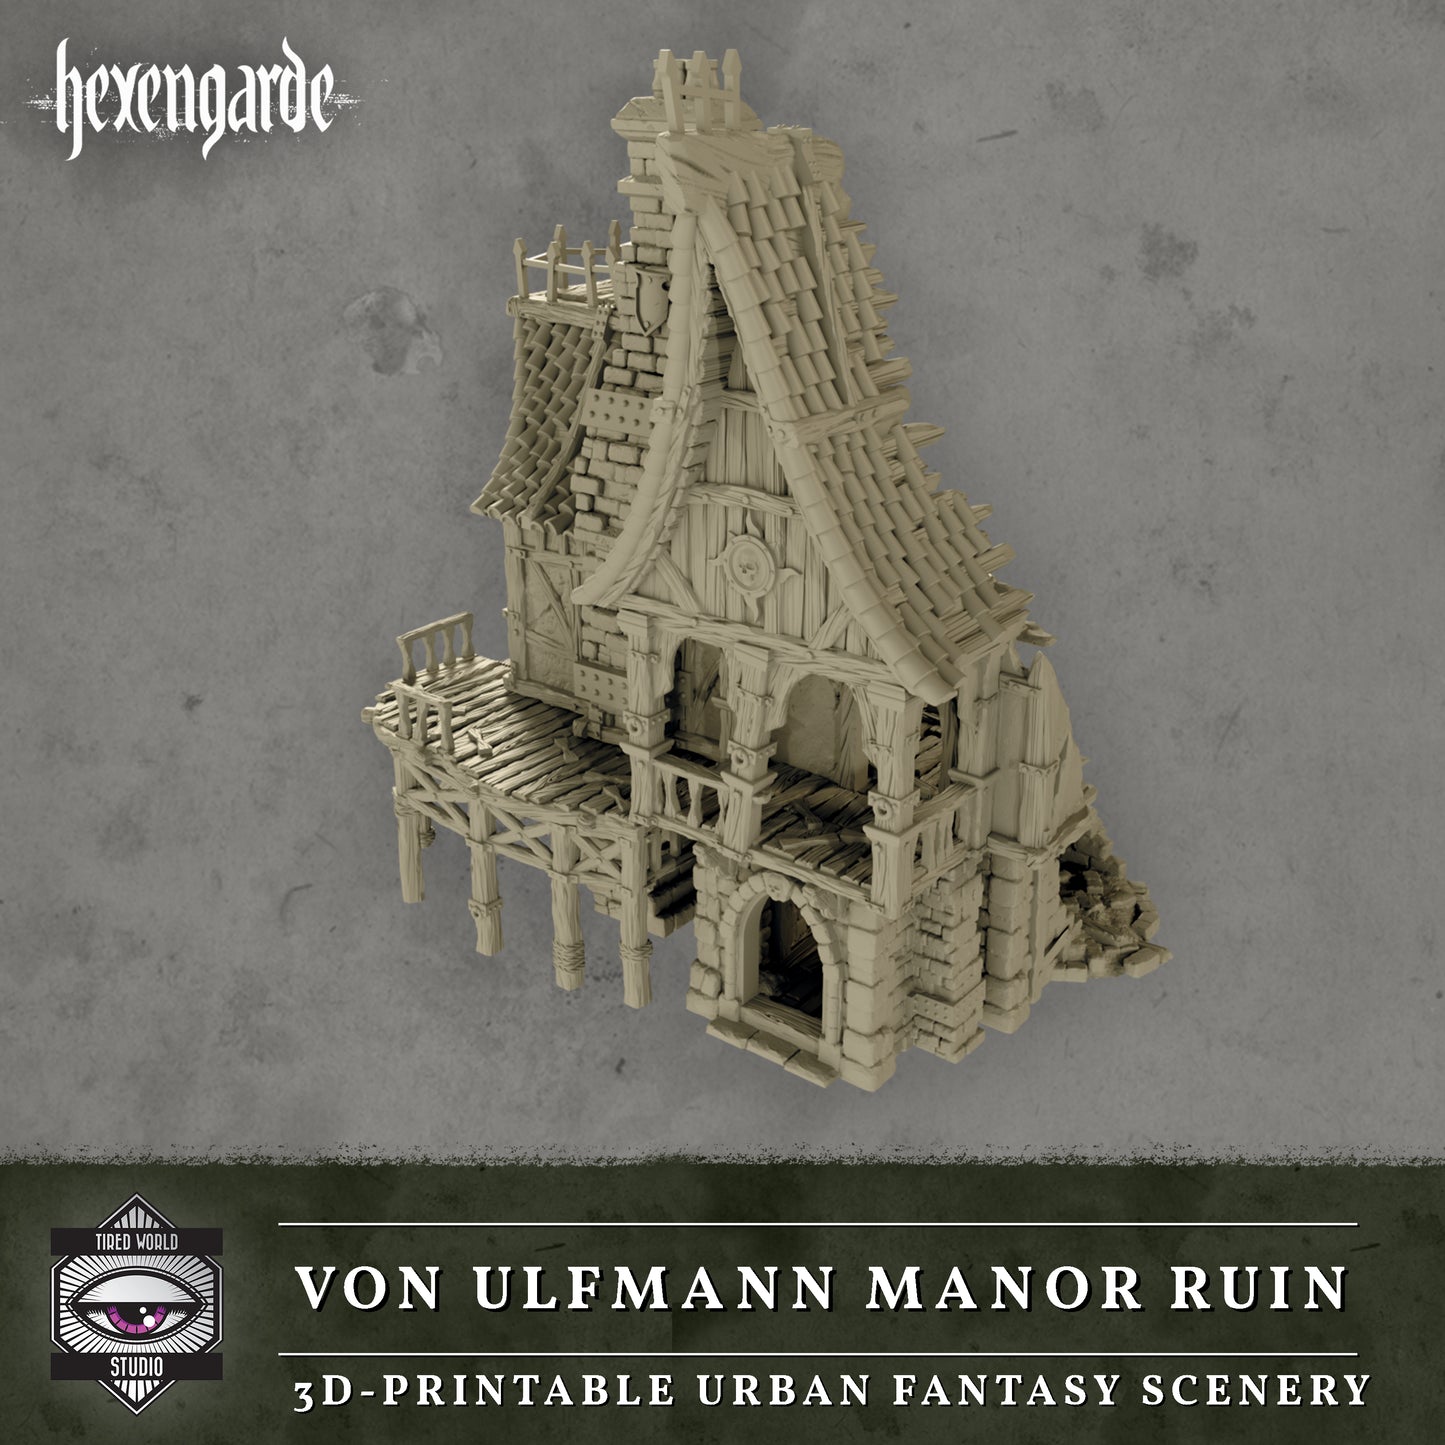 Von Ulfmann Mannor Ruin